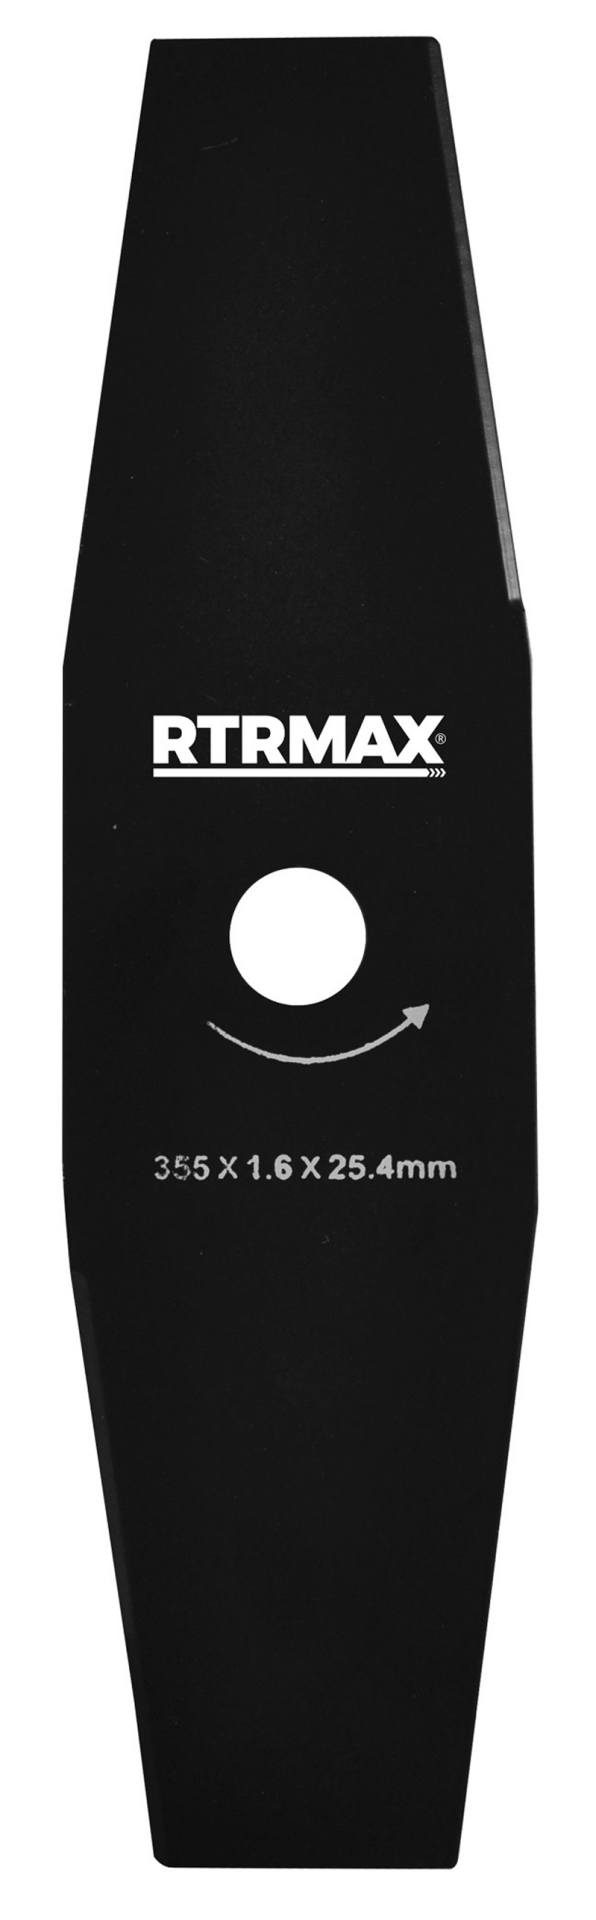 RTRMAX RTY112 2'li 250 x 25.4 X 1.6 mm Tırpan Bıçağı